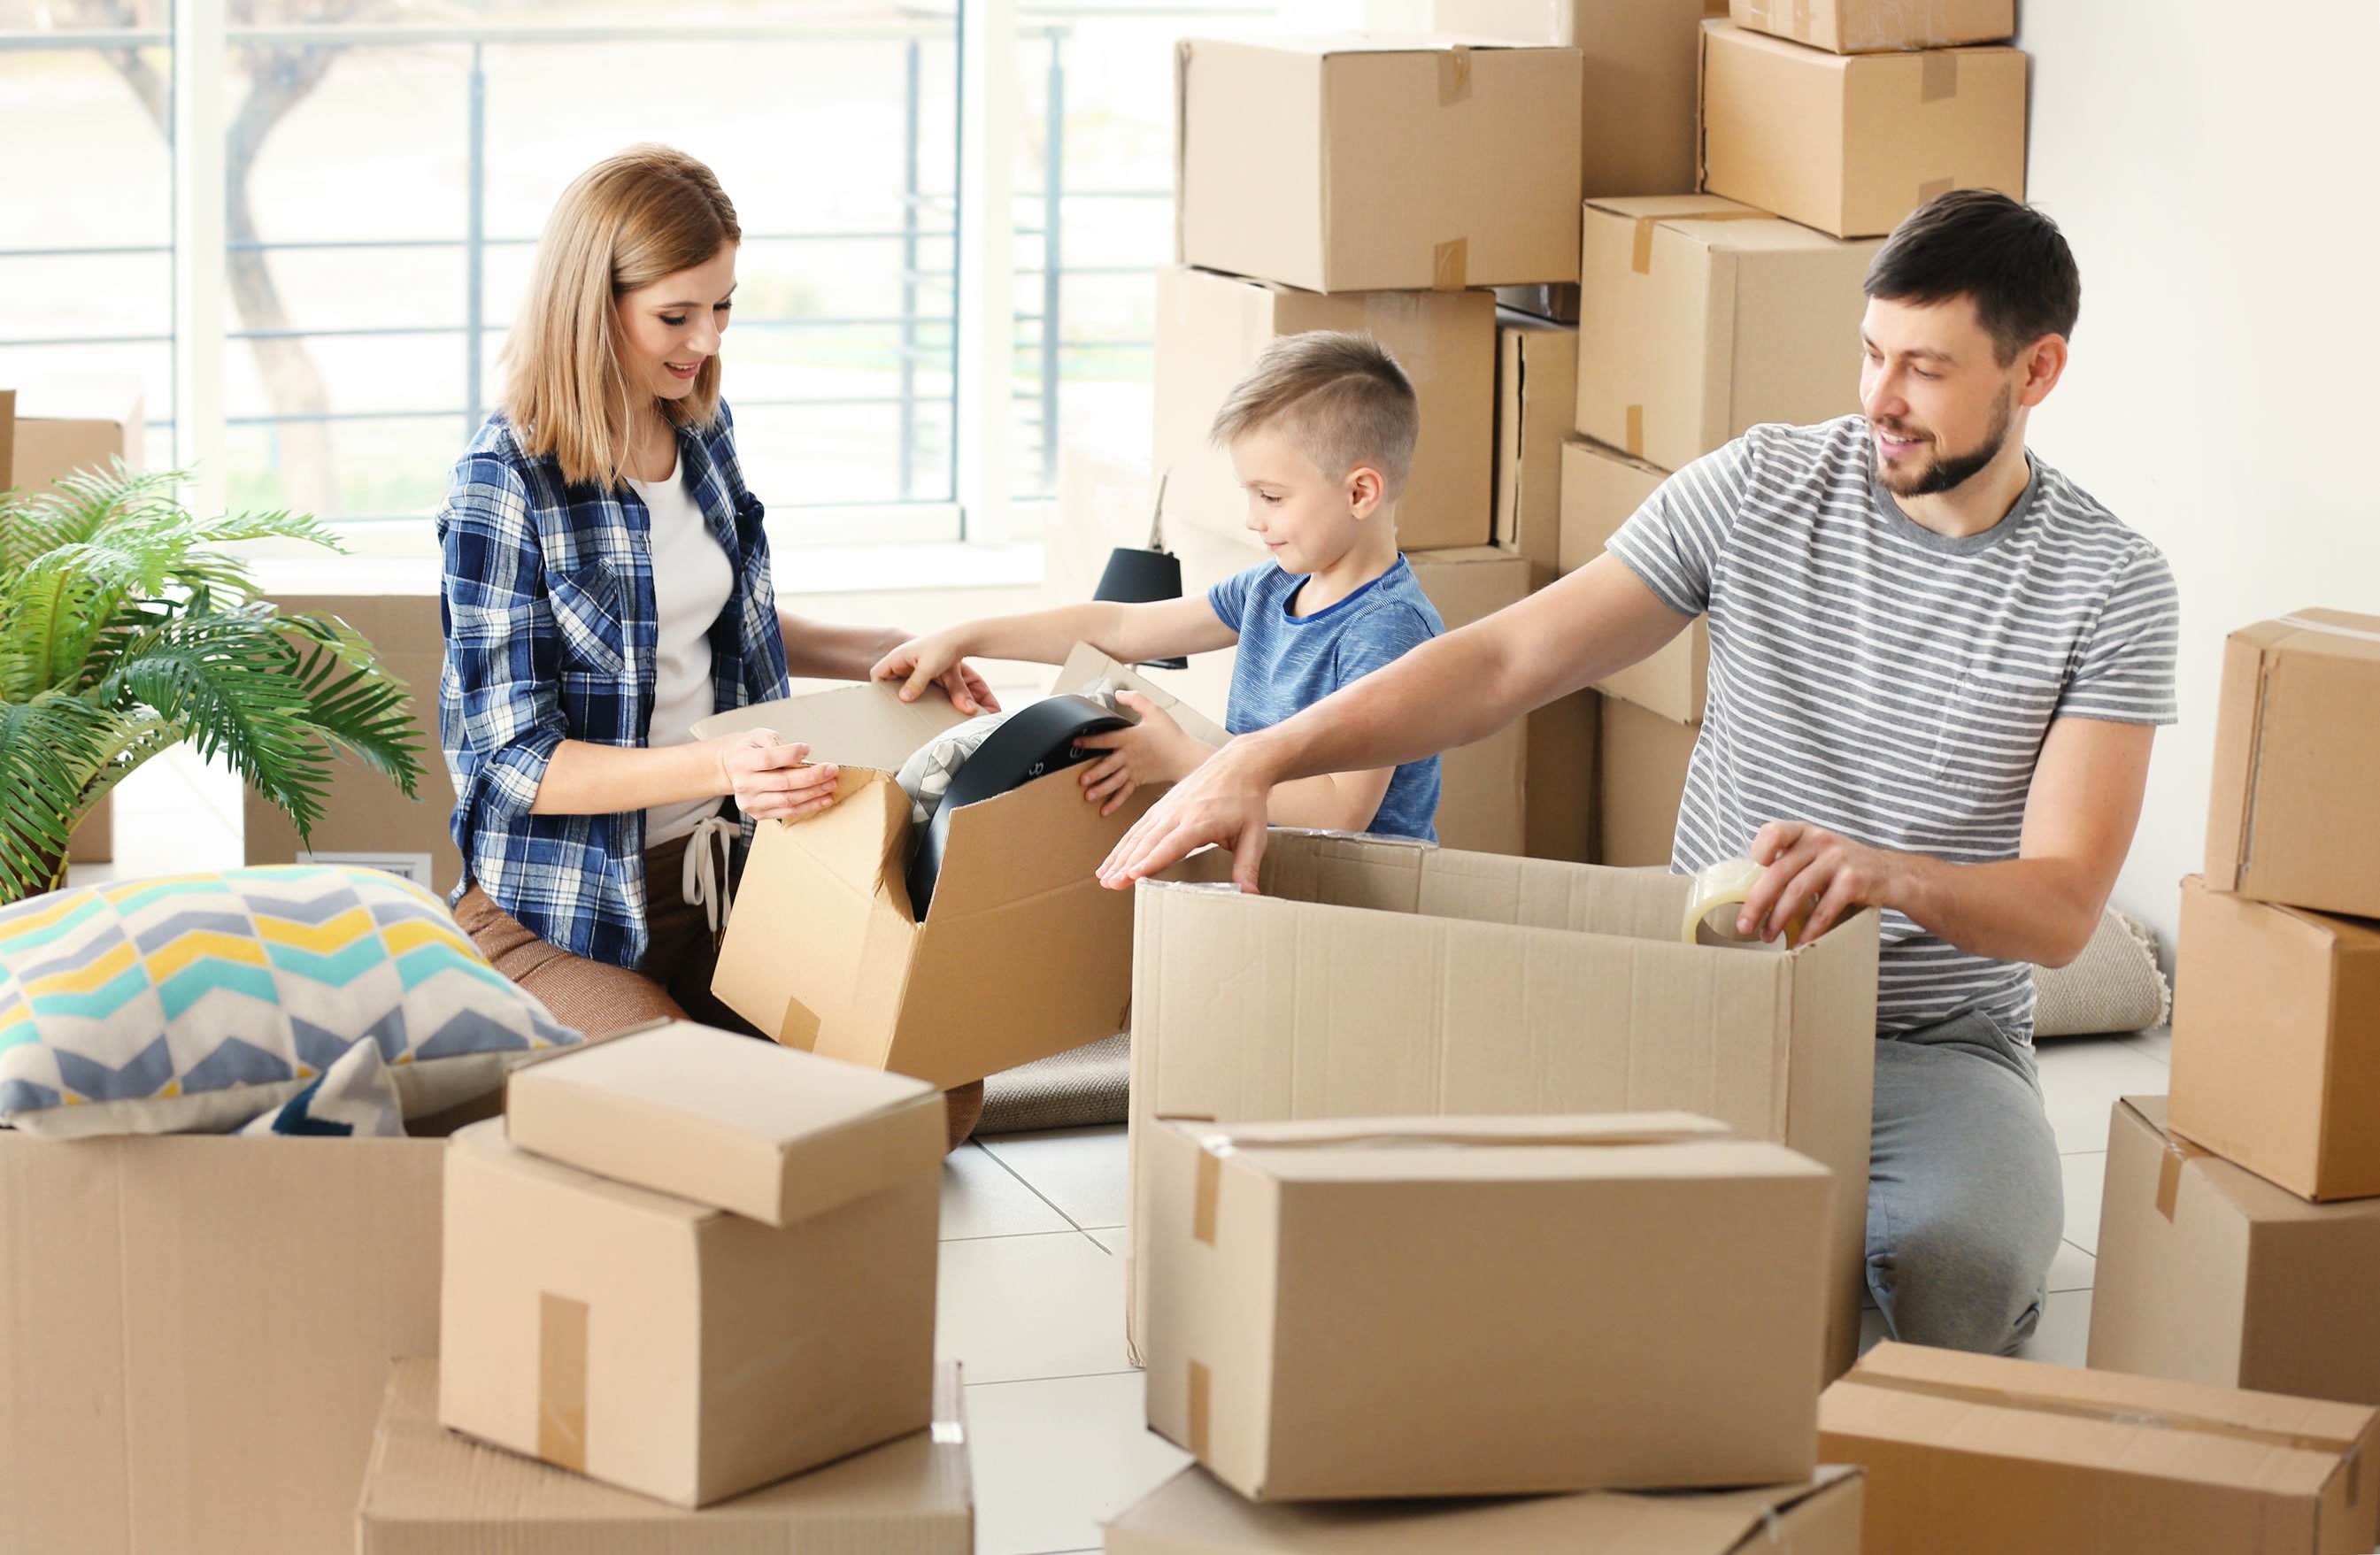 Дешево переехать. Переезд. Семья в квартире с коробками. Переезжают в квартиру. Коробки с вещами.